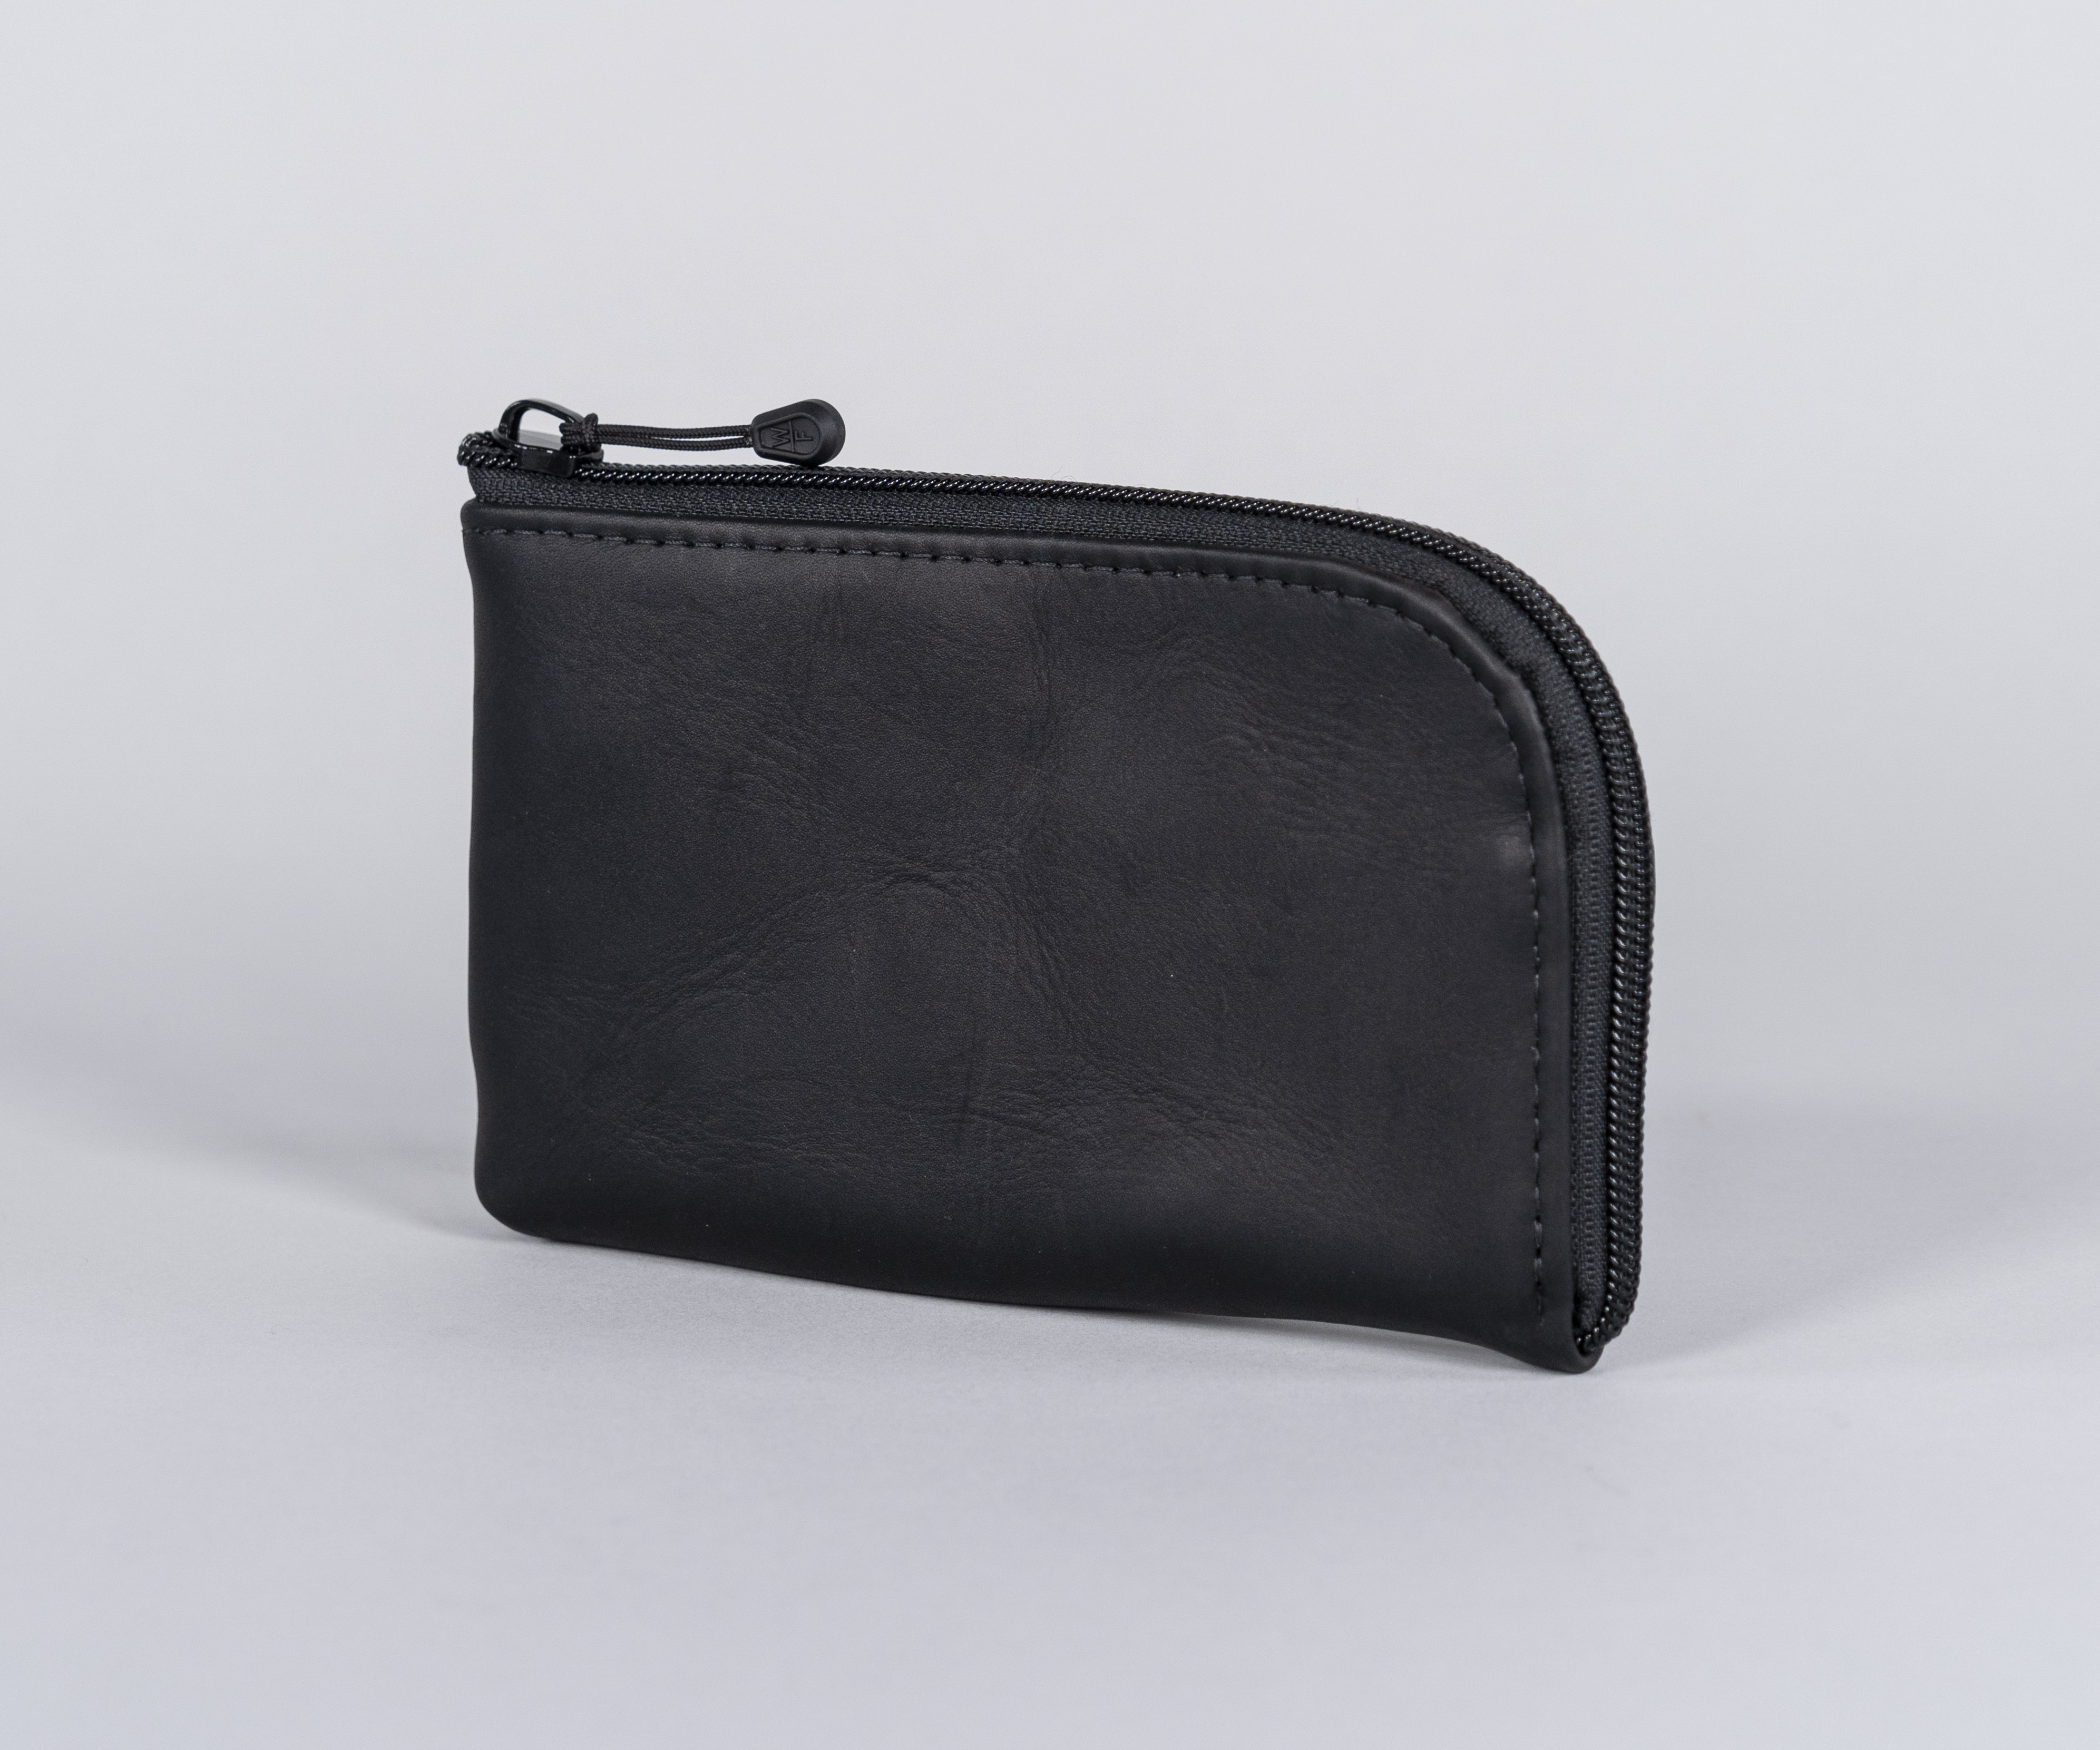 Finn iPhone Wallet Holster in black full-grain leather